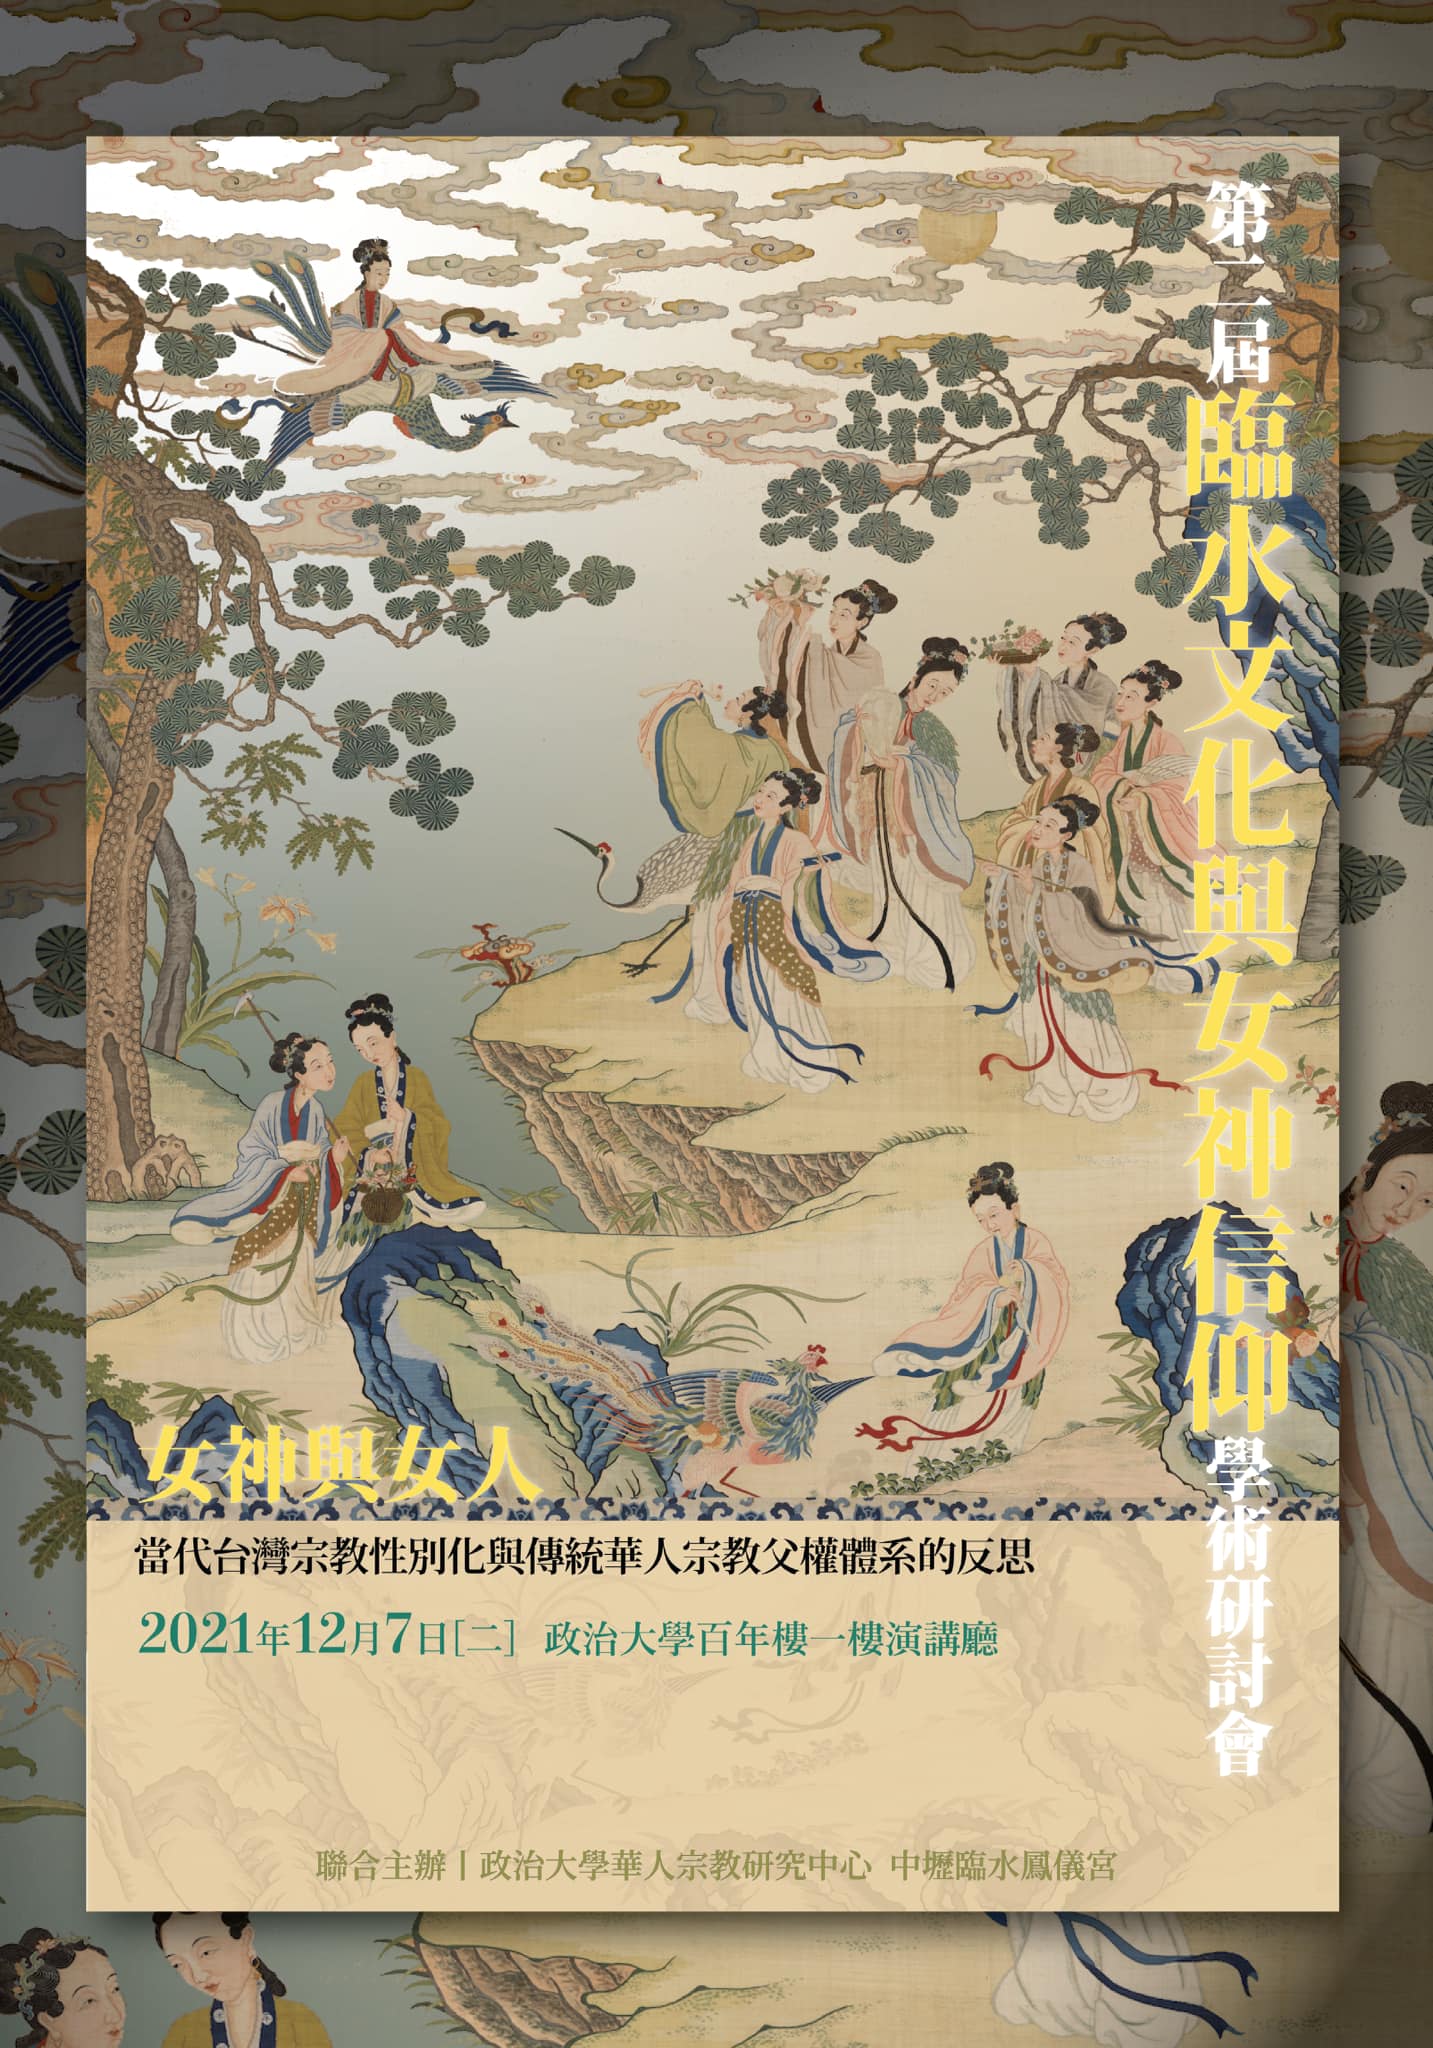 2021.12.7(二) 第二屆「臨水文化與女神信仰」學術研討會